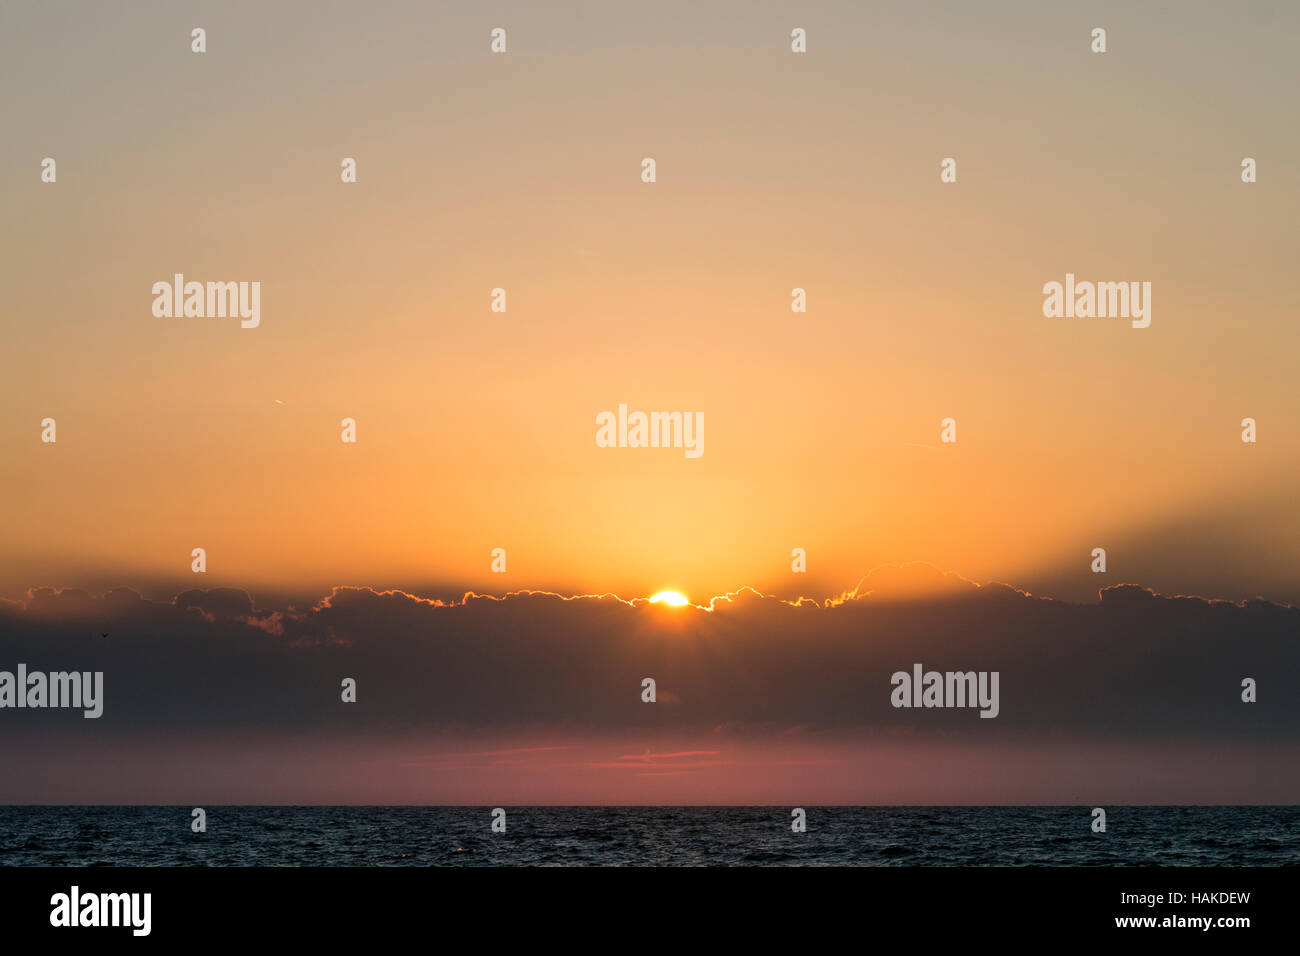 Inghilterra, Broadstairs. All'alba. Il sorgere del sole da dietro il cloud banca nel Canale della Manica. Principalmente giallo arancione del cielo. Foto Stock